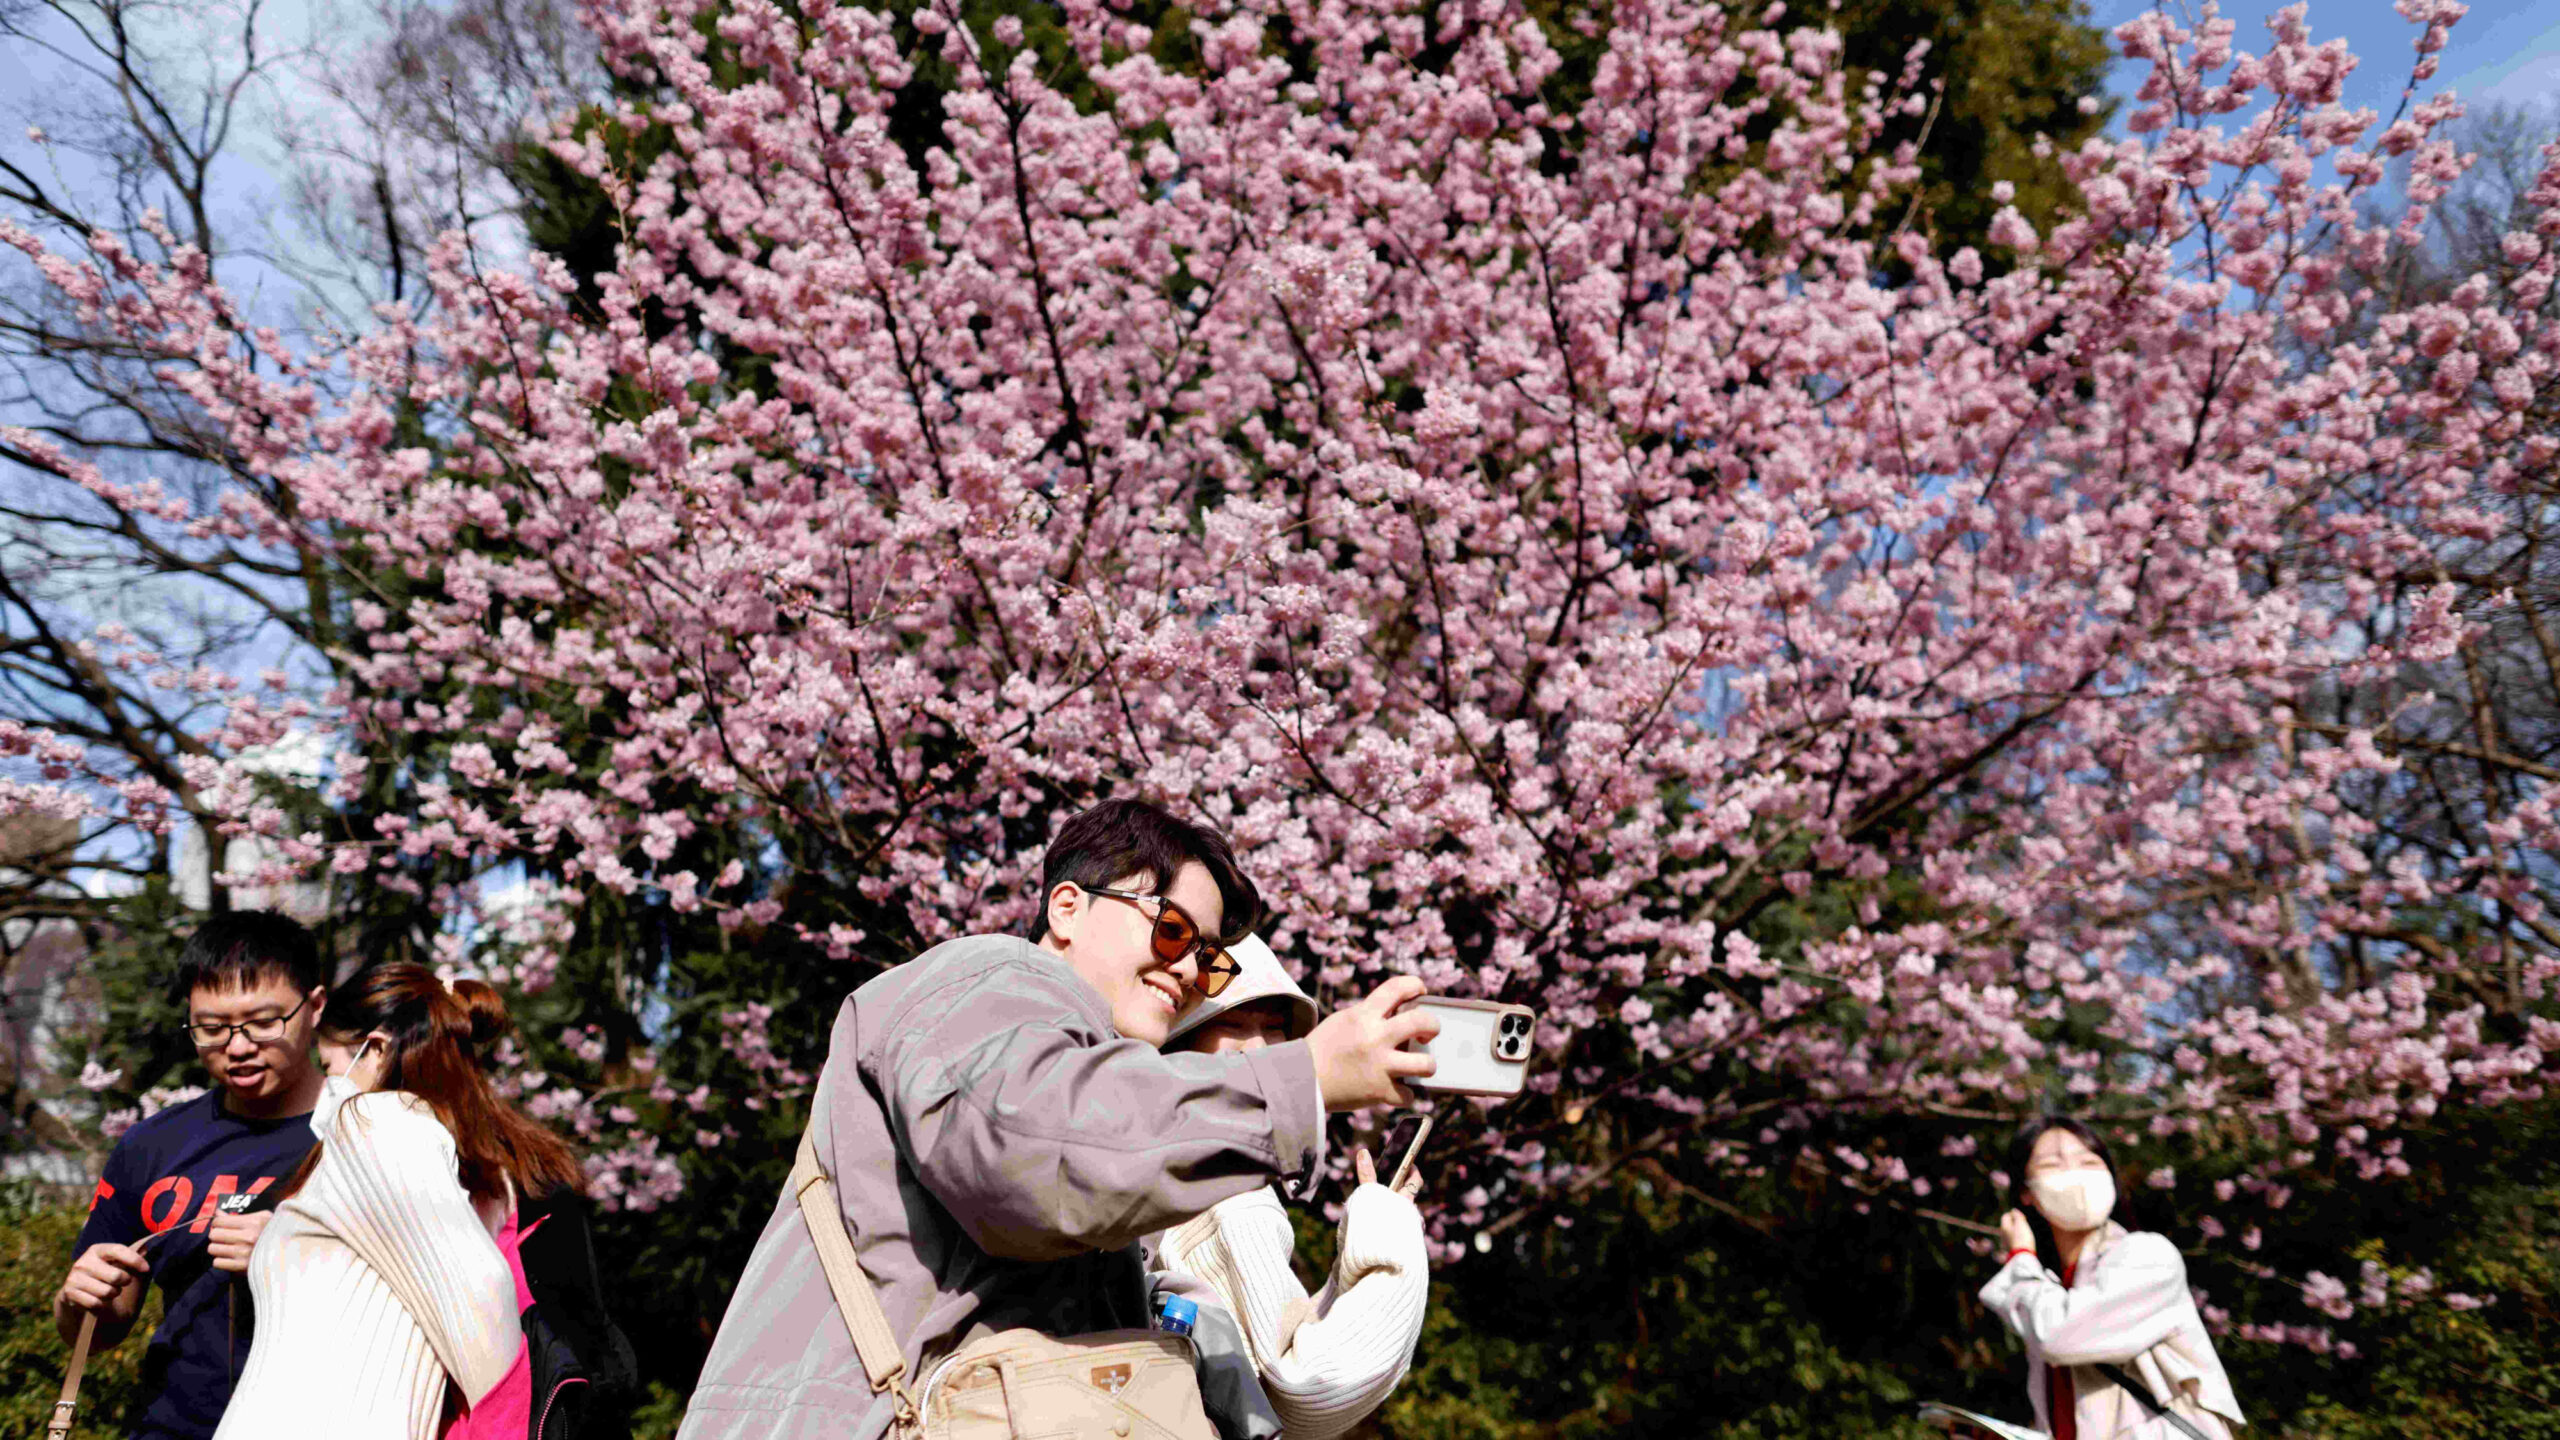 фото сакуры в цвету в японии